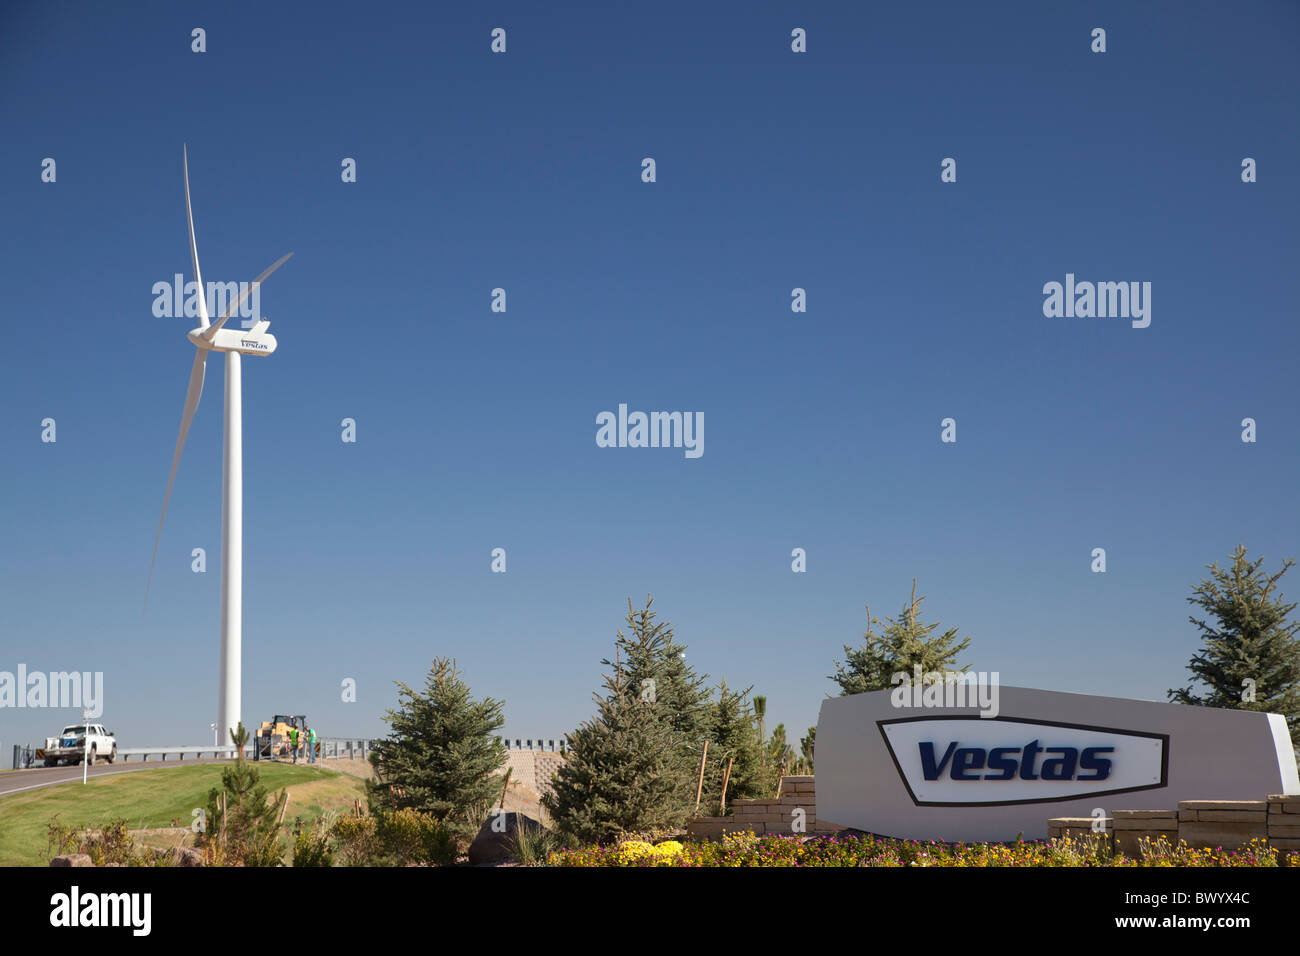 Pueblo, Colorado - Vestas Wind Turbine-Turm Produktionsstätte. Stockfoto